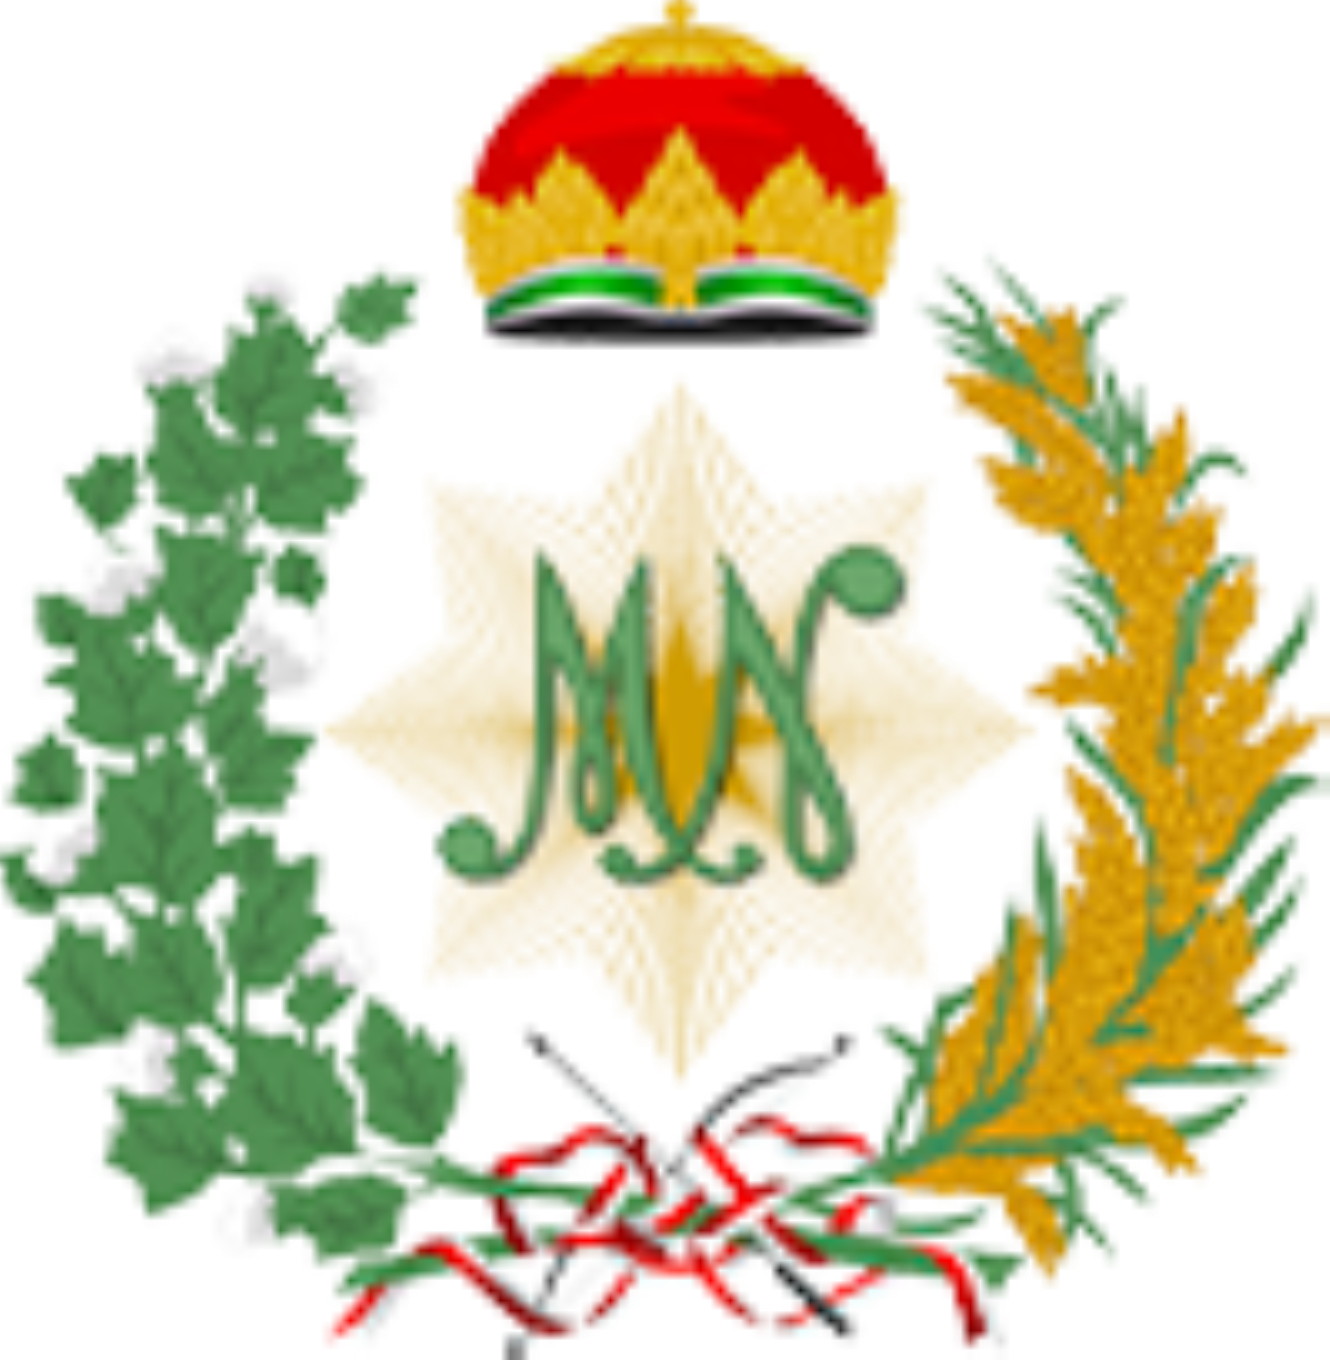 mangkunegaran logo